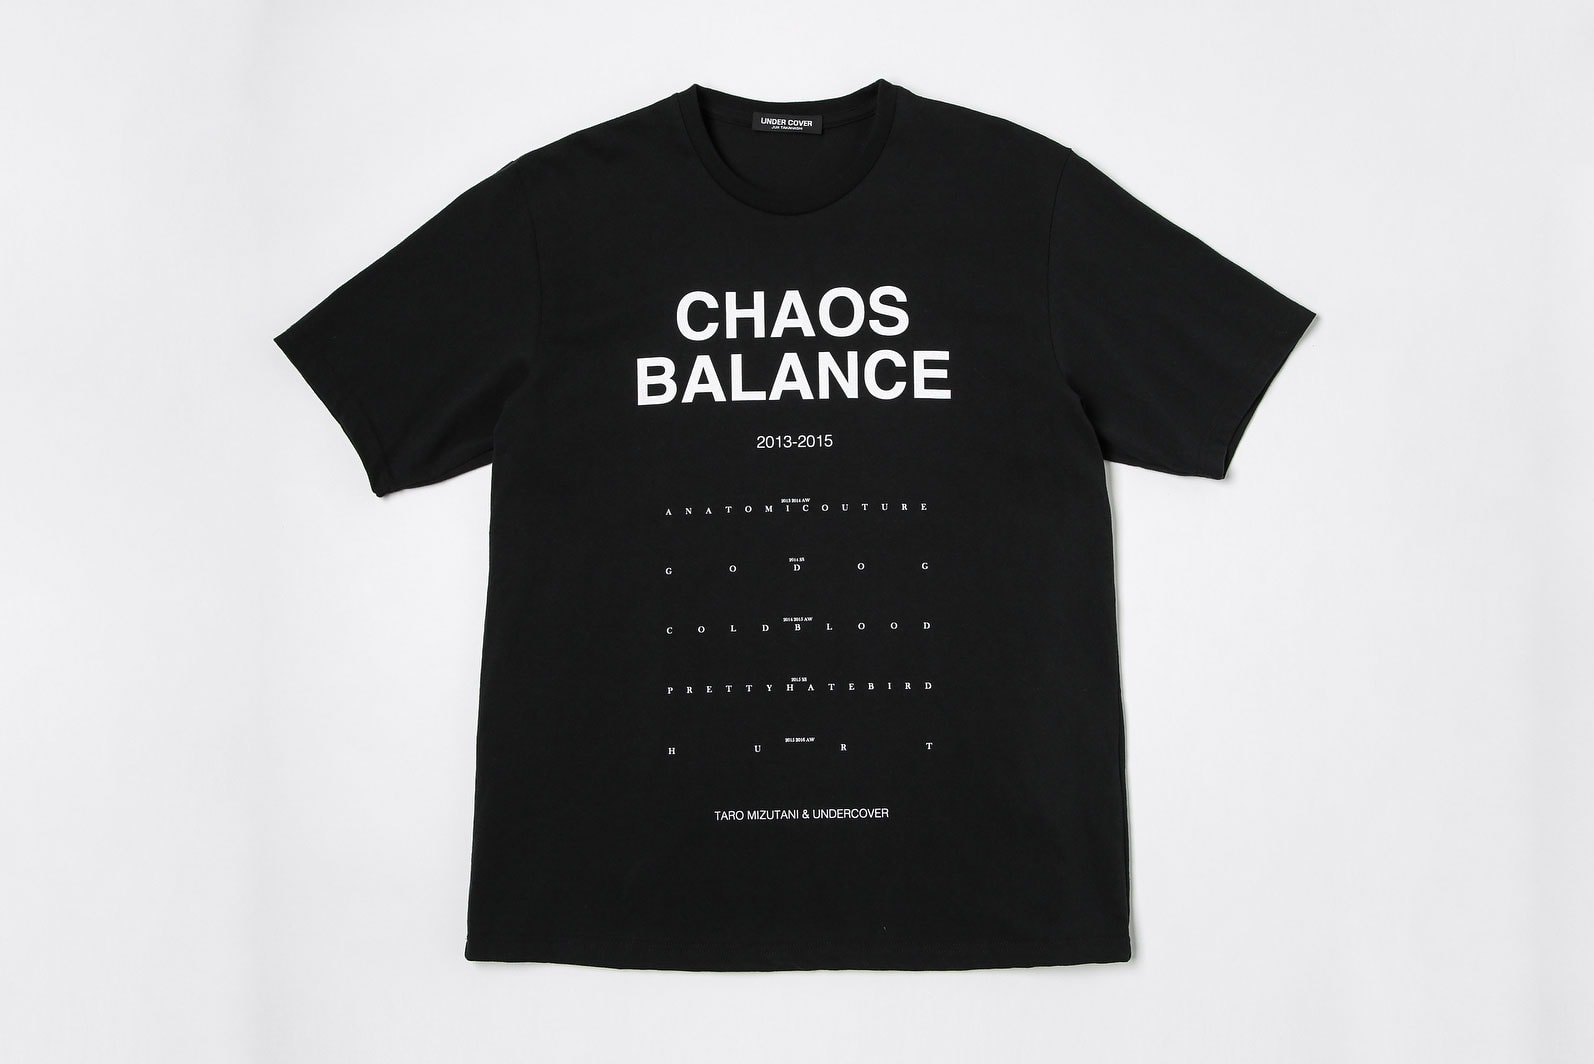 水谷太郎 x UNDERCOVER “Chaos / Balance” フォトエキシビジョンに注目